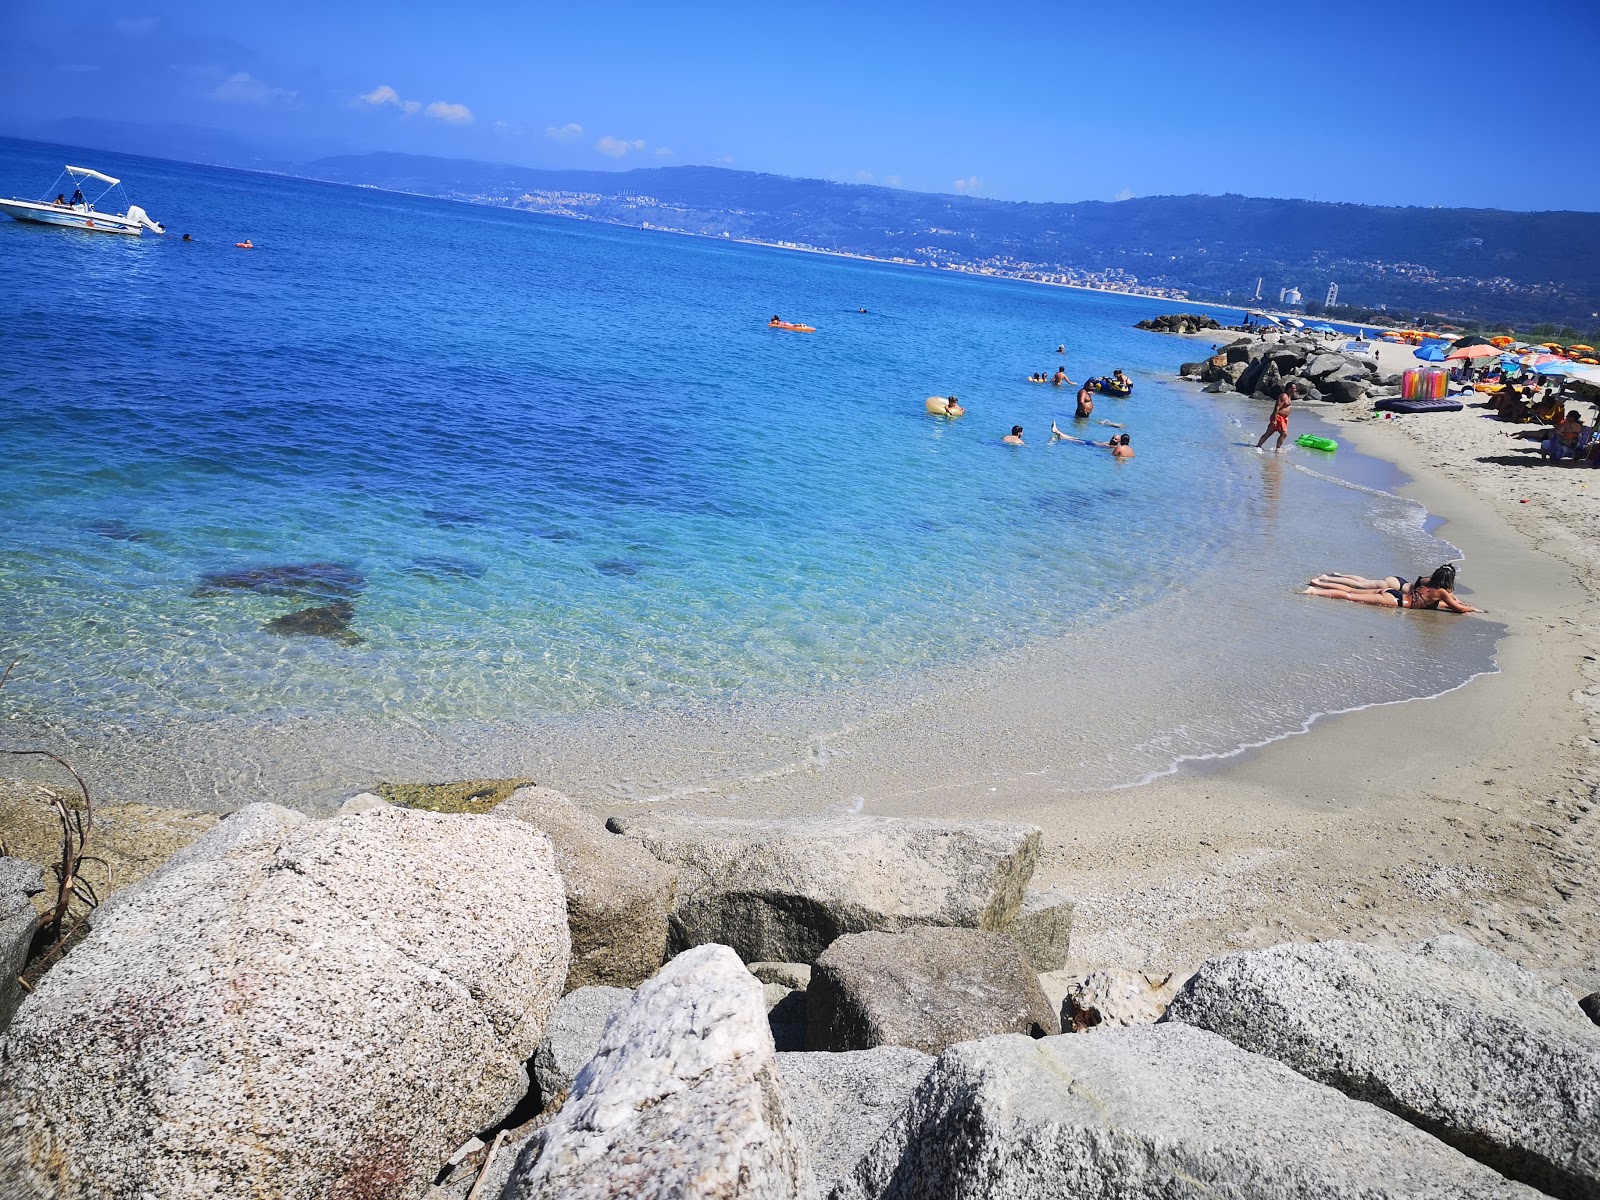 Spiaggia di Trainiti'in fotoğrafı parlak kum yüzey ile